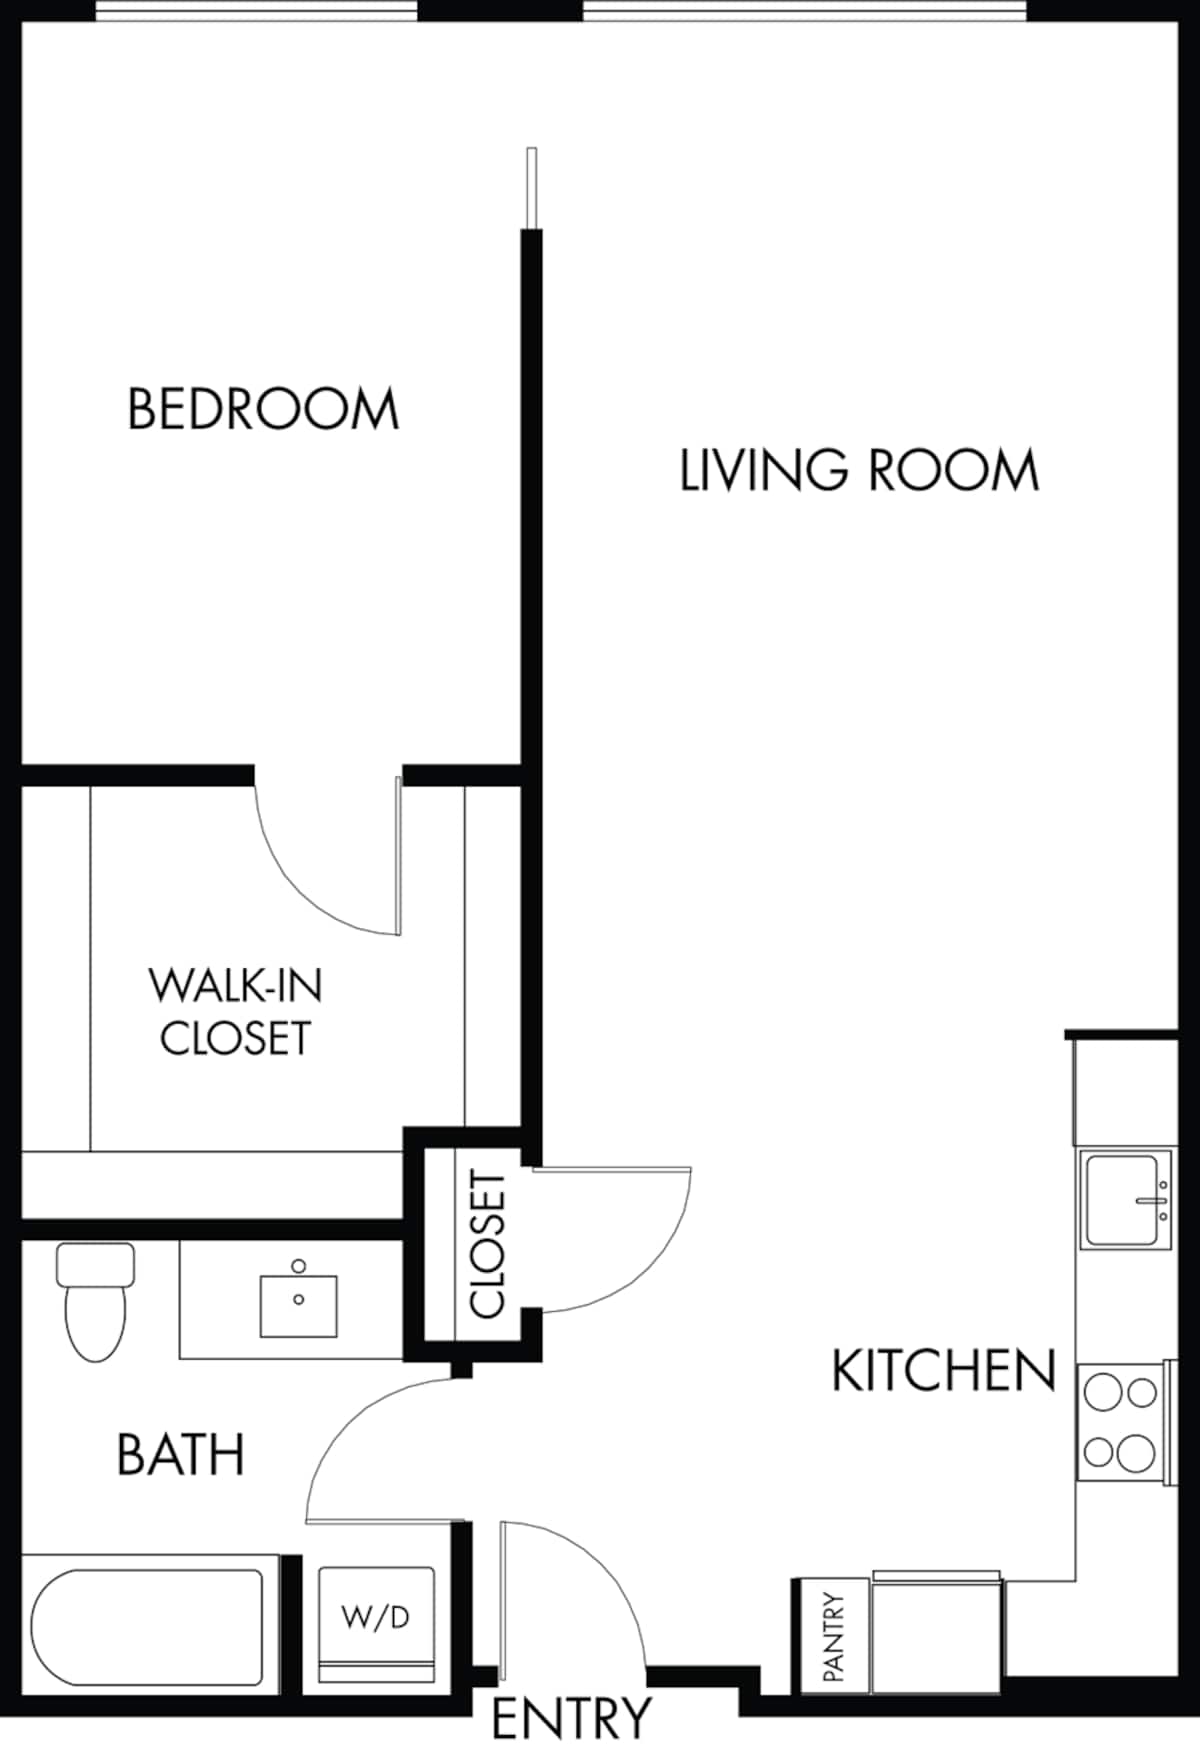 Floorplan diagram for 1.1, showing 1 bedroom